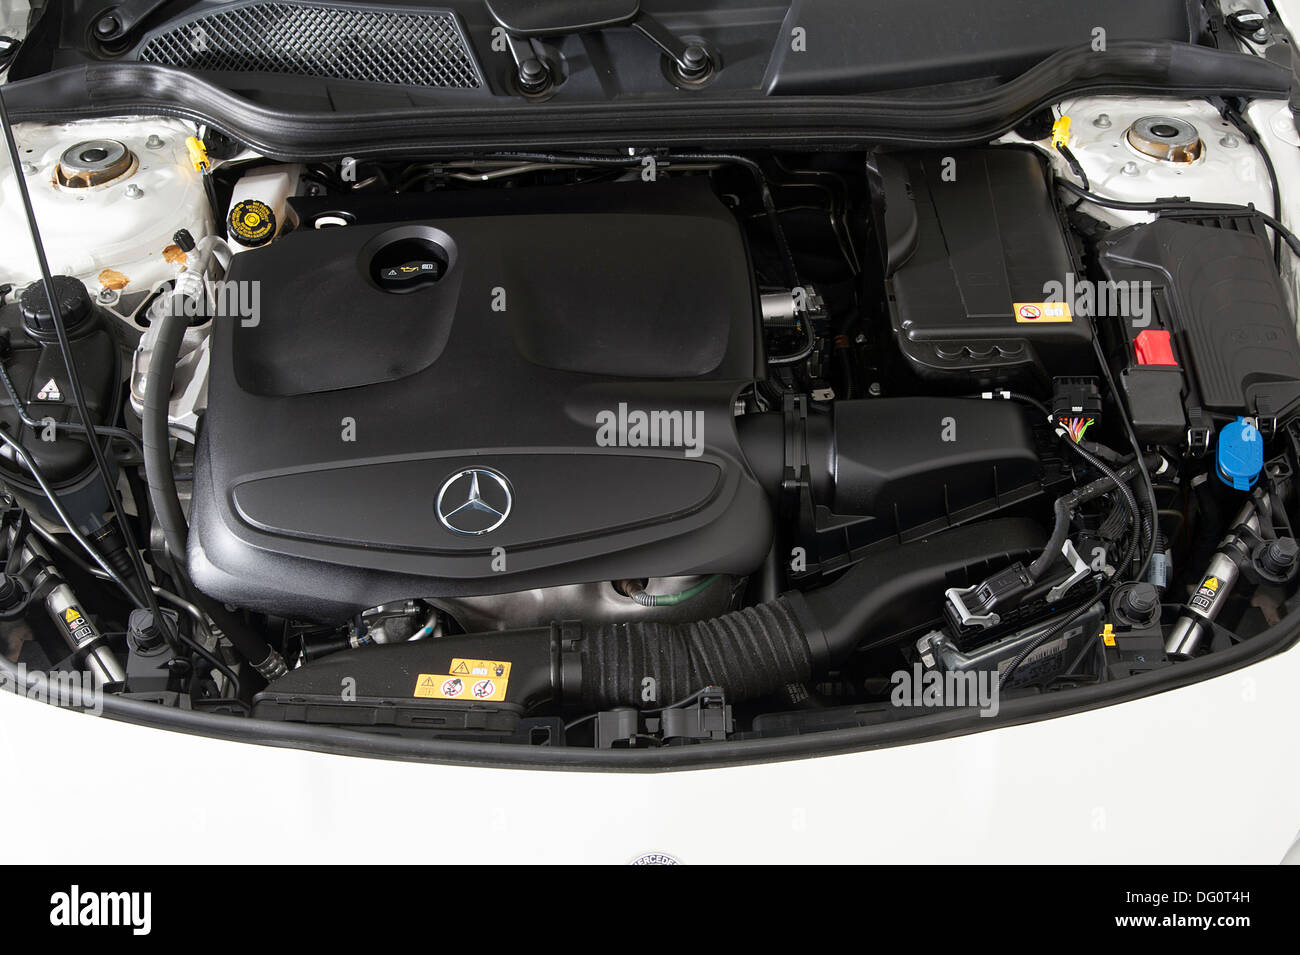 Mercedes benz cla immagini e fotografie stock ad alta risoluzione - Alamy